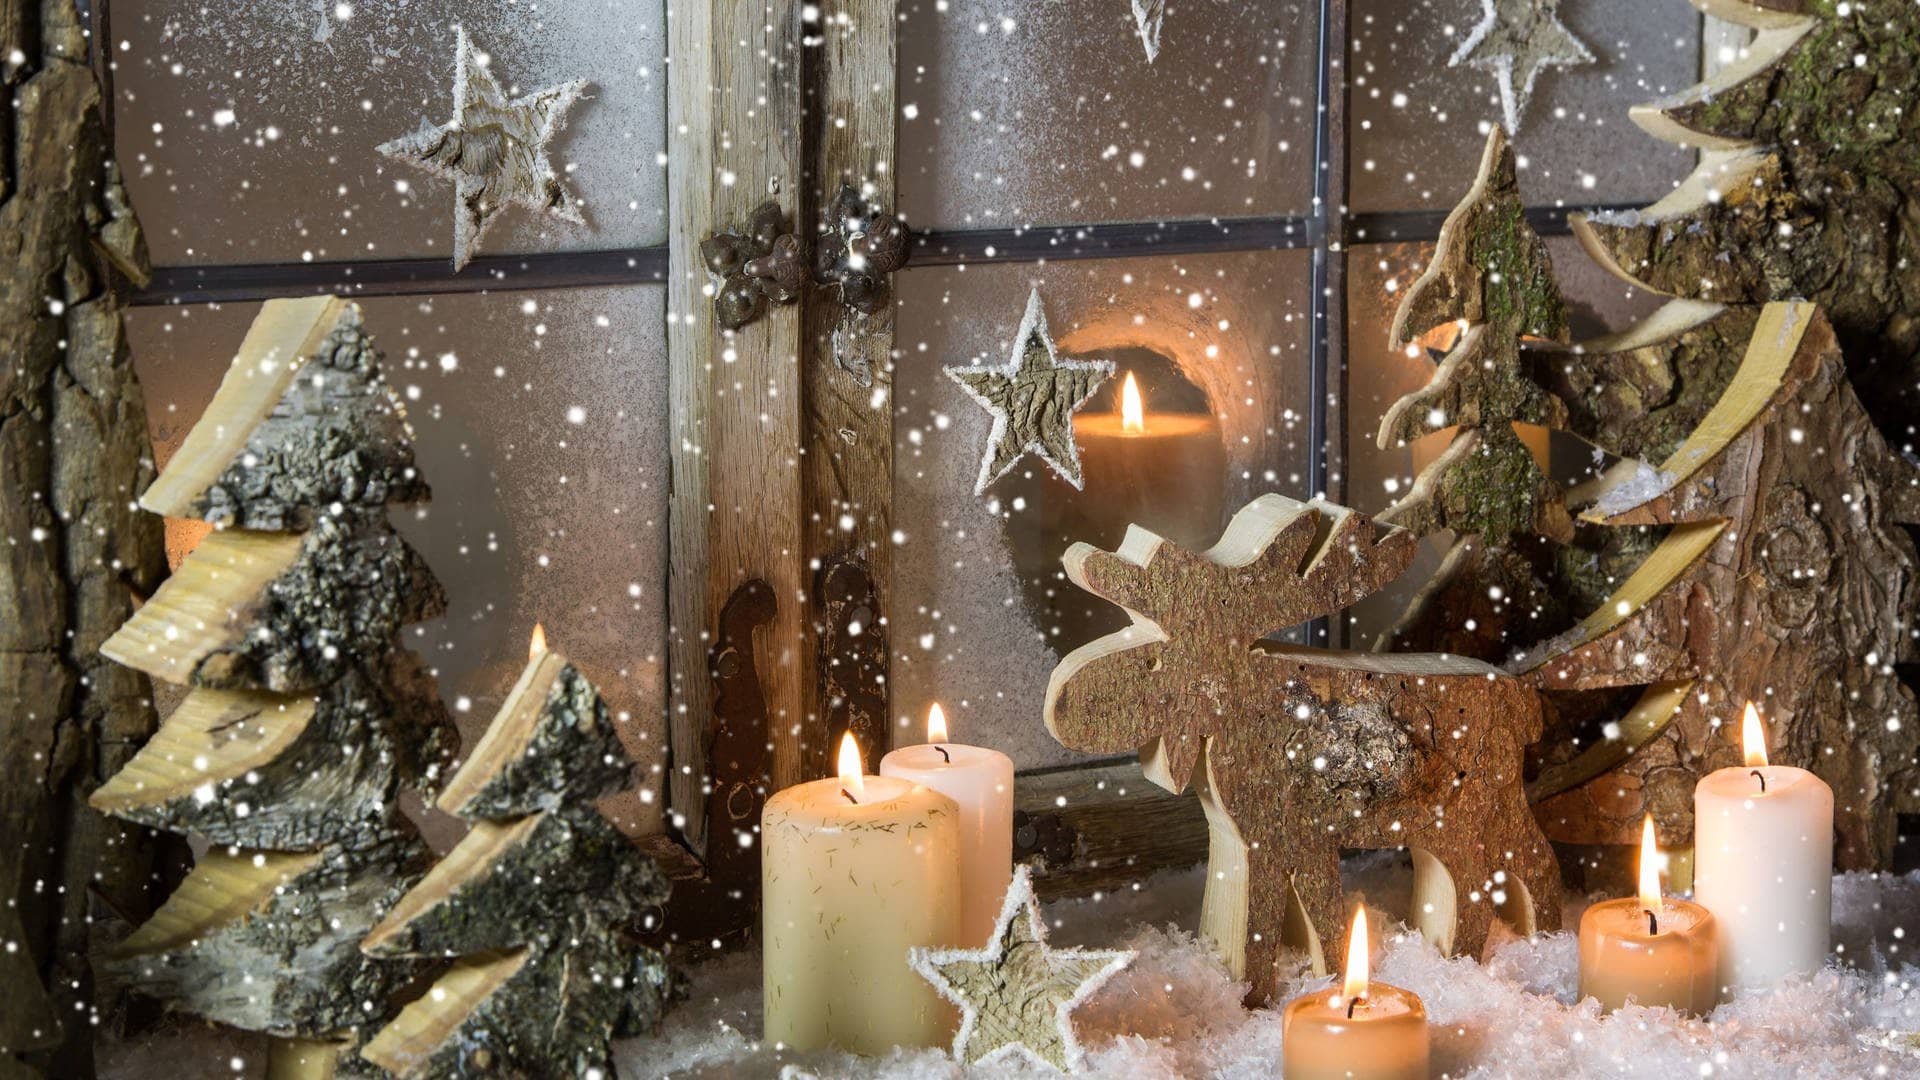 Weihnachtsdeko vor dem Fenster: Mit Tannenzweigen, Kerzen und einer Elch-Figur aus Holz